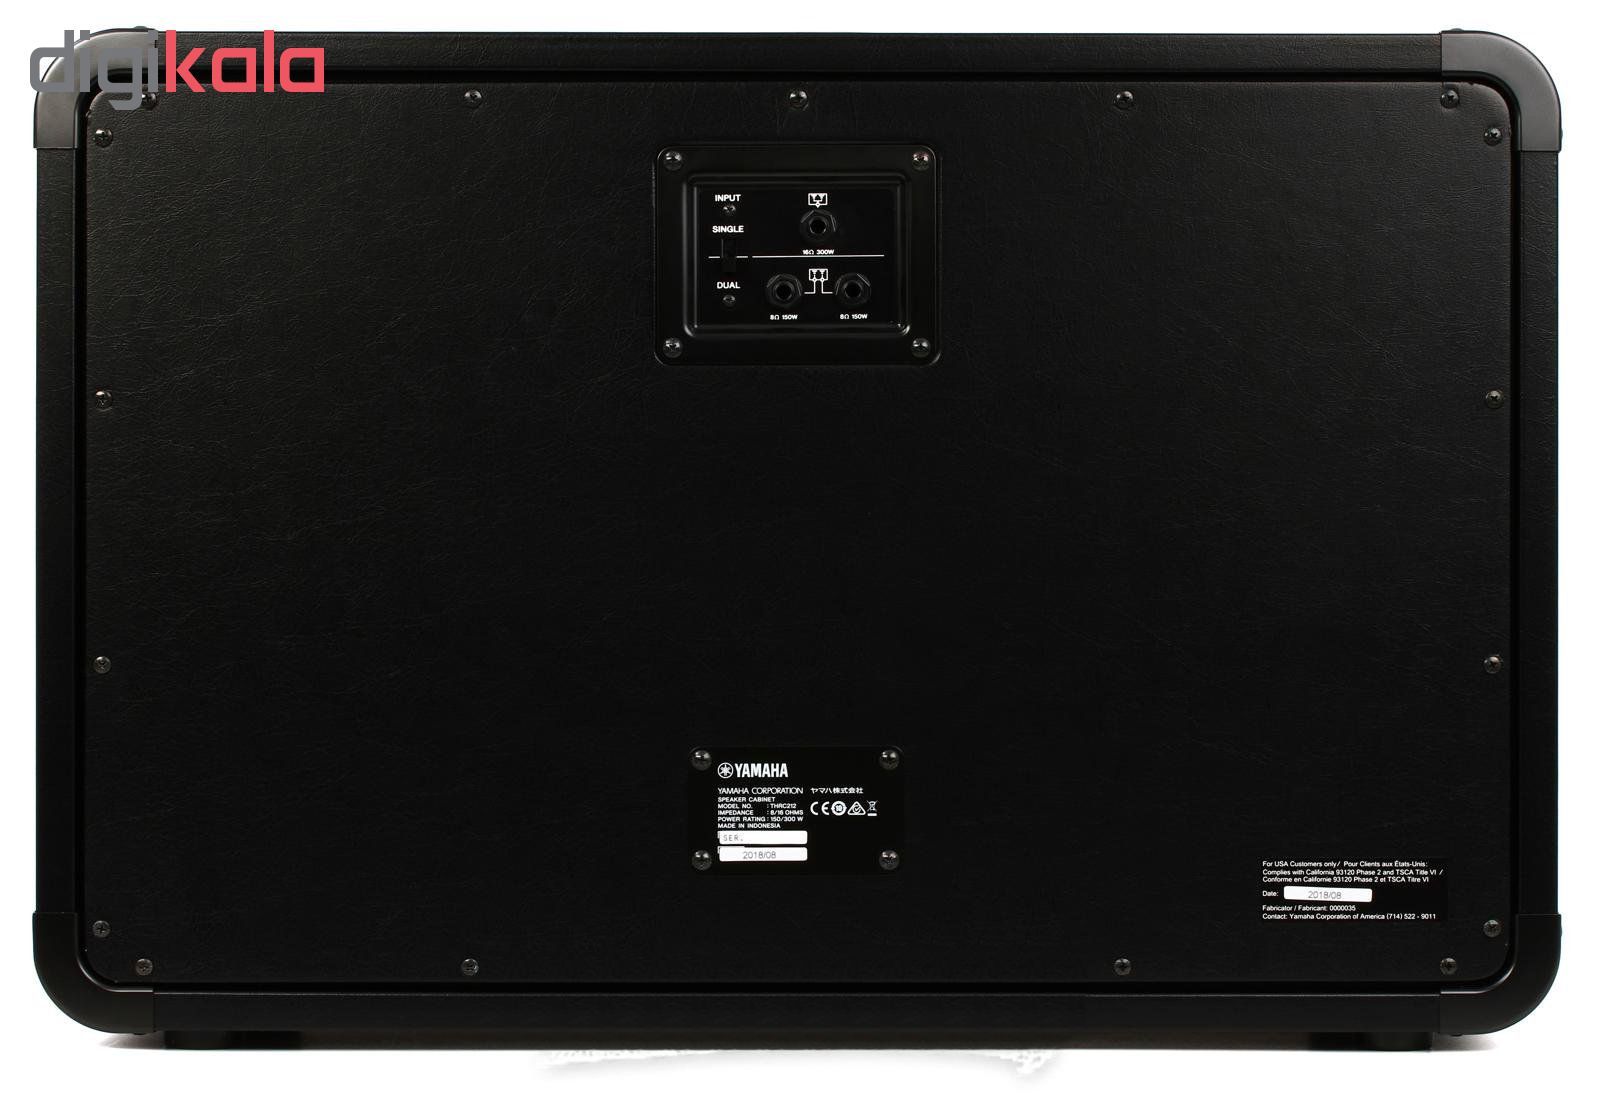 هد آمپلی فایر یاماها مدل THR100 H Dual 2 channel به همراه کابینت آمپلی فایر یاماها مدل THRC212 Stereo Cabinet